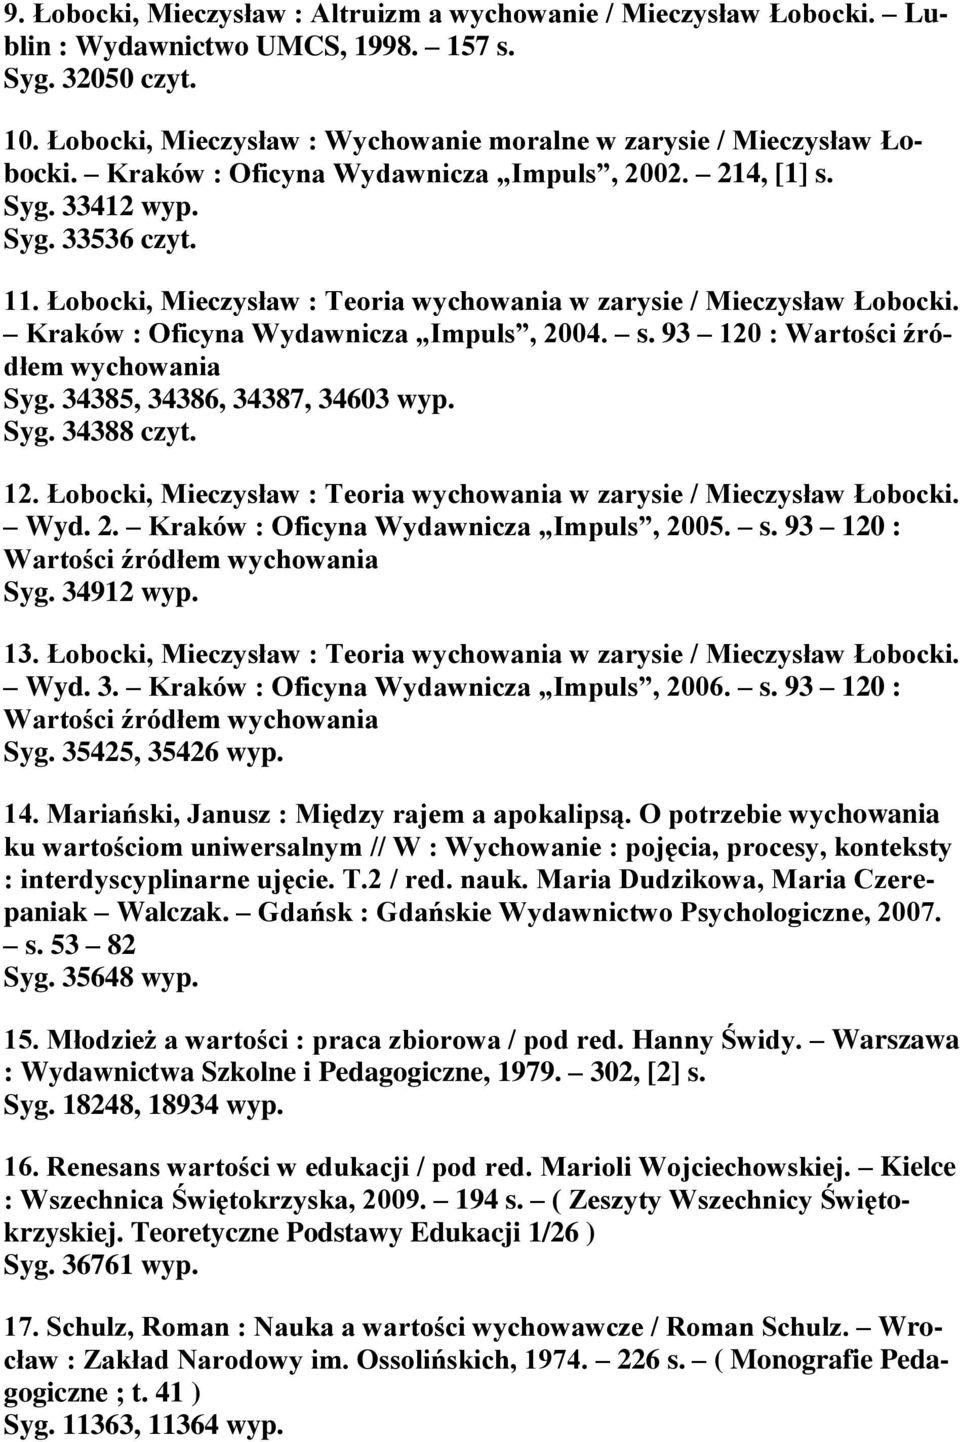 Łobocki, Mieczysław : Teoria wychowania w zarysie / Mieczysław Łobocki. Kraków : Oficyna Wydawnicza Impuls, 2004. s. 93 120 : Wartości źródłem wychowania Syg. 34385, 34386, 34387, 34603 wyp. Syg. 34388 czyt.